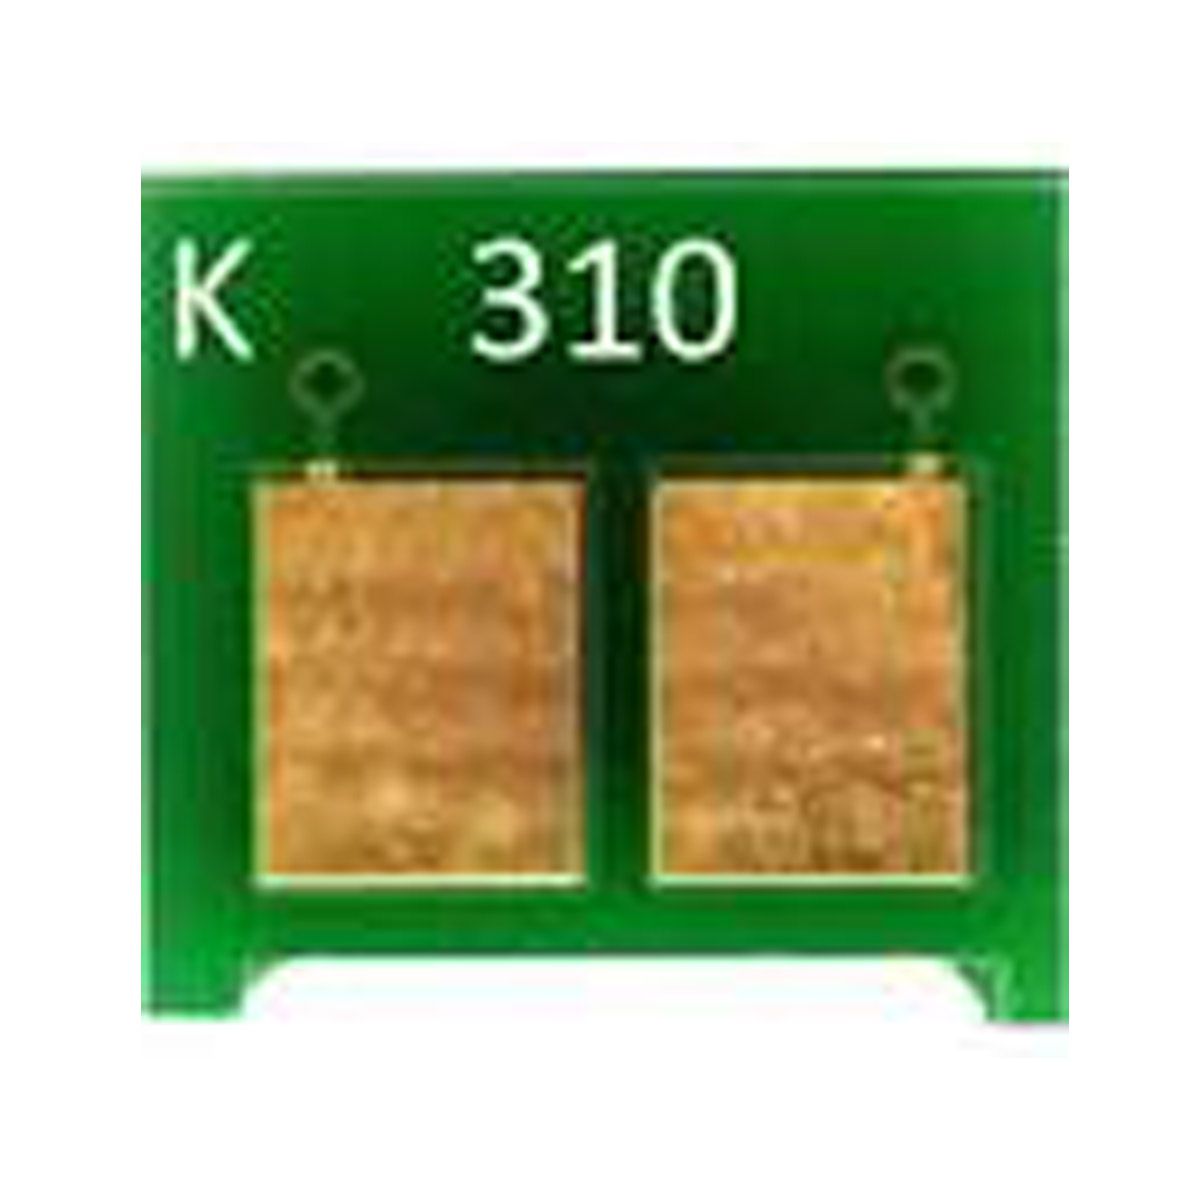 Chip HP CE310A CE310 310A 126A - CP1020 CP1020WN CP1025 M175 M175A M176N - Preto - 1,2K